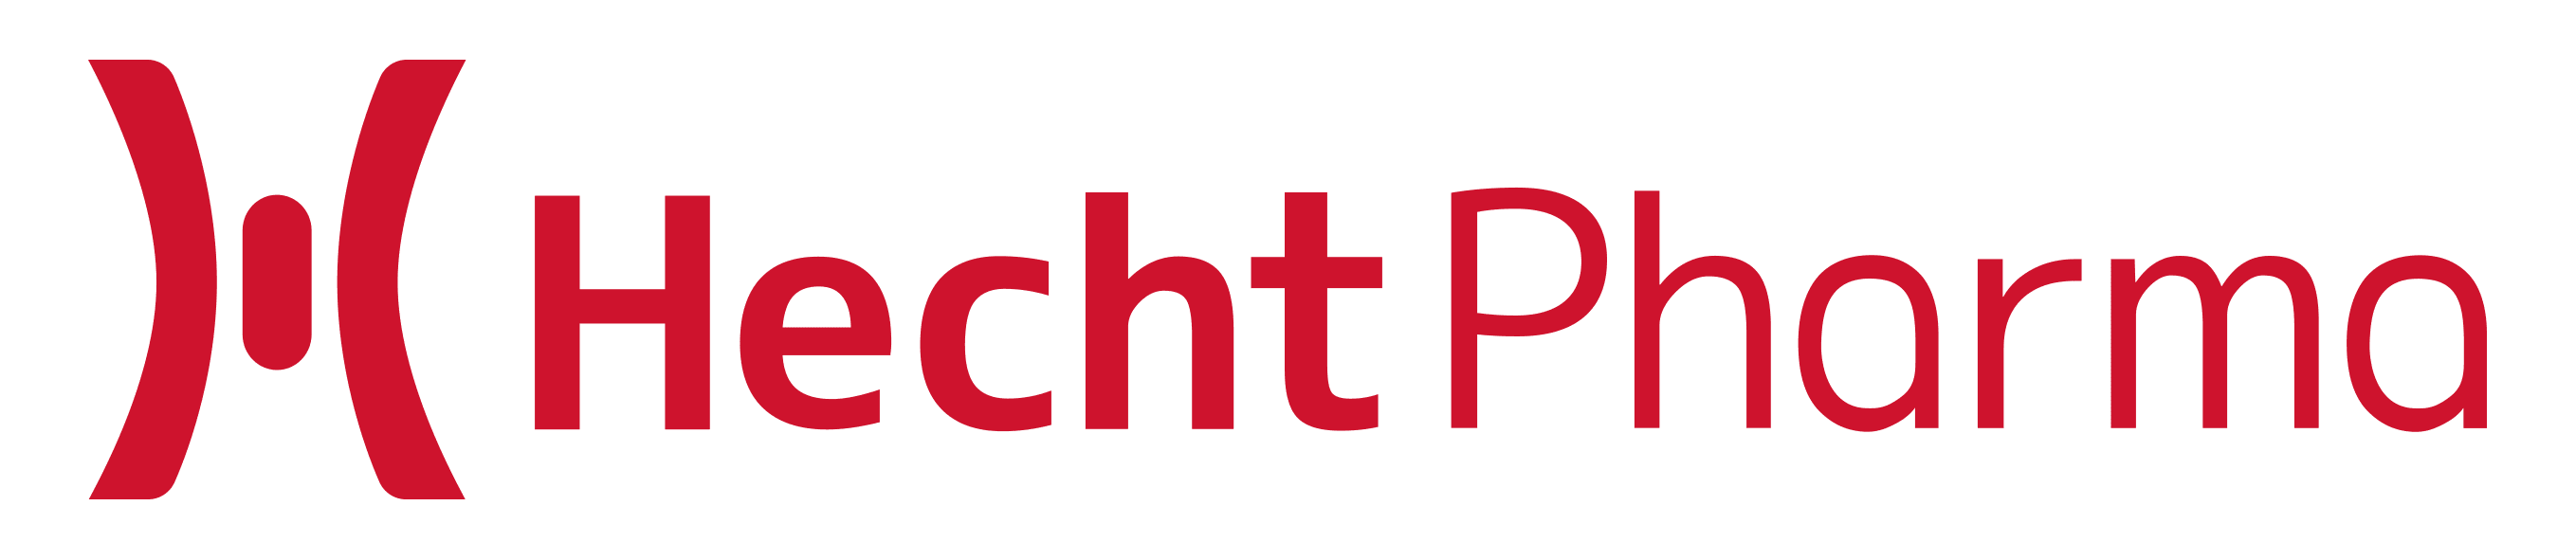 Hecht-Pharma GmbH